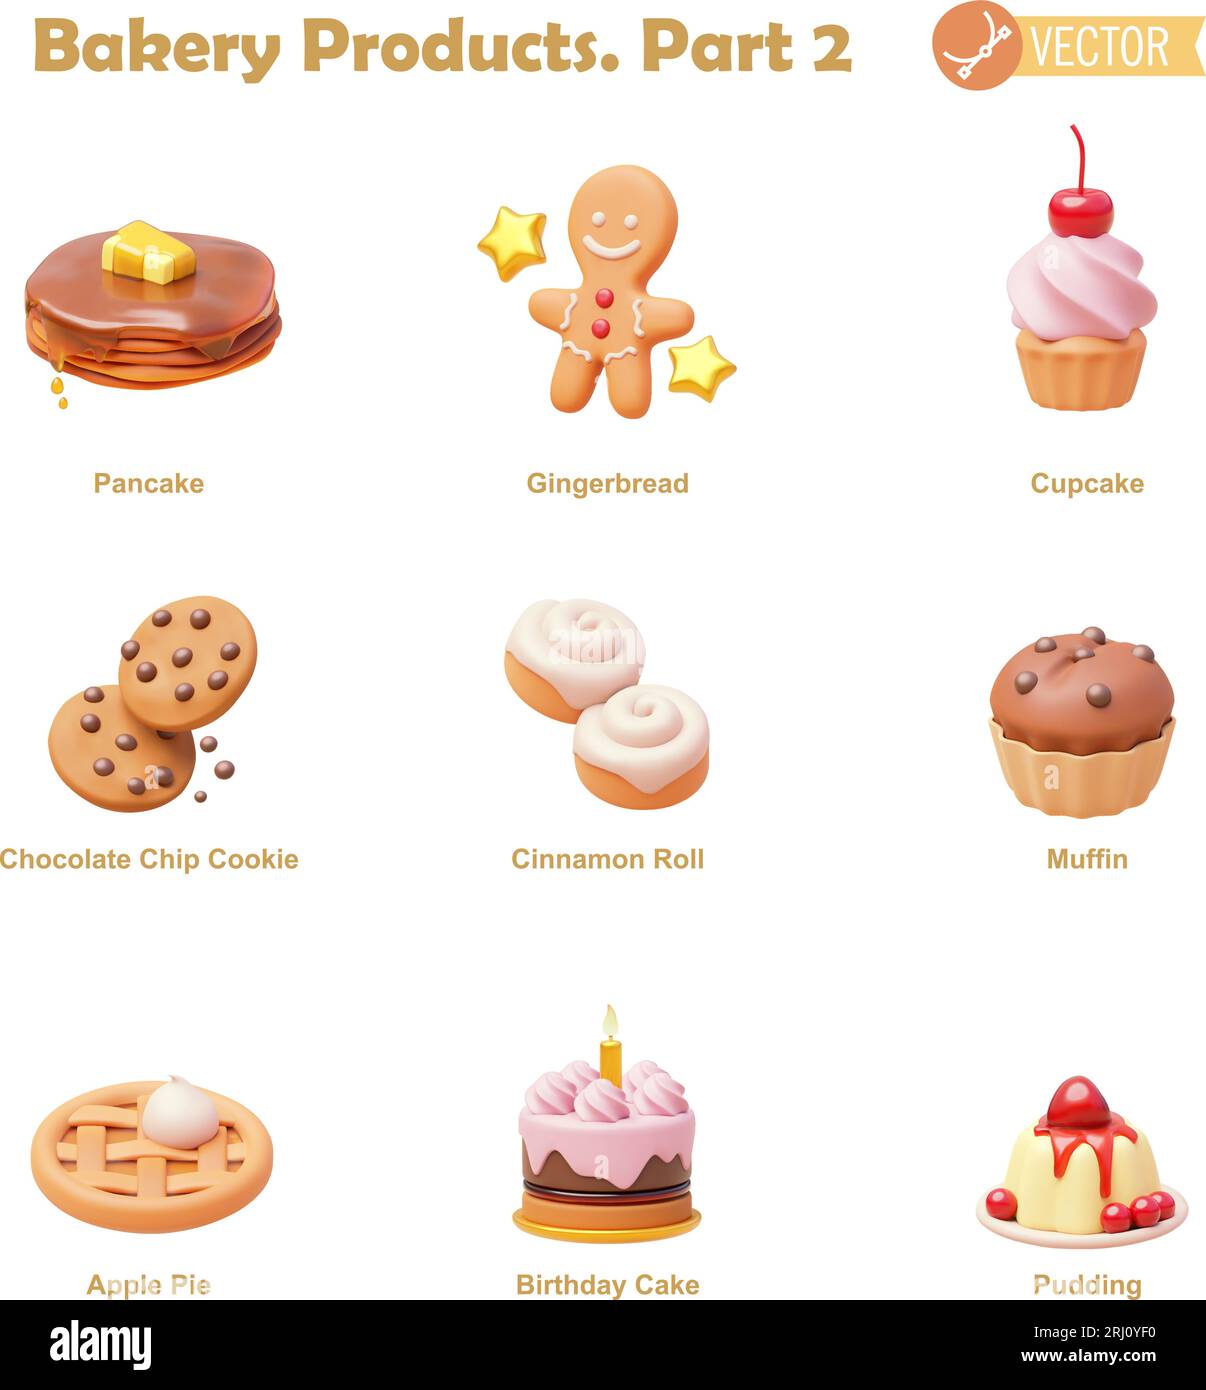 Jeu d'icônes de produits de boulangerie et pâtisserie Vector. Crêpe, pain d'épices, cupcake, biscuits, rouleau de cannelle, muffin, tarte aux pommes, gâteau d'anniversaire et icônes de pudding Illustration de Vecteur